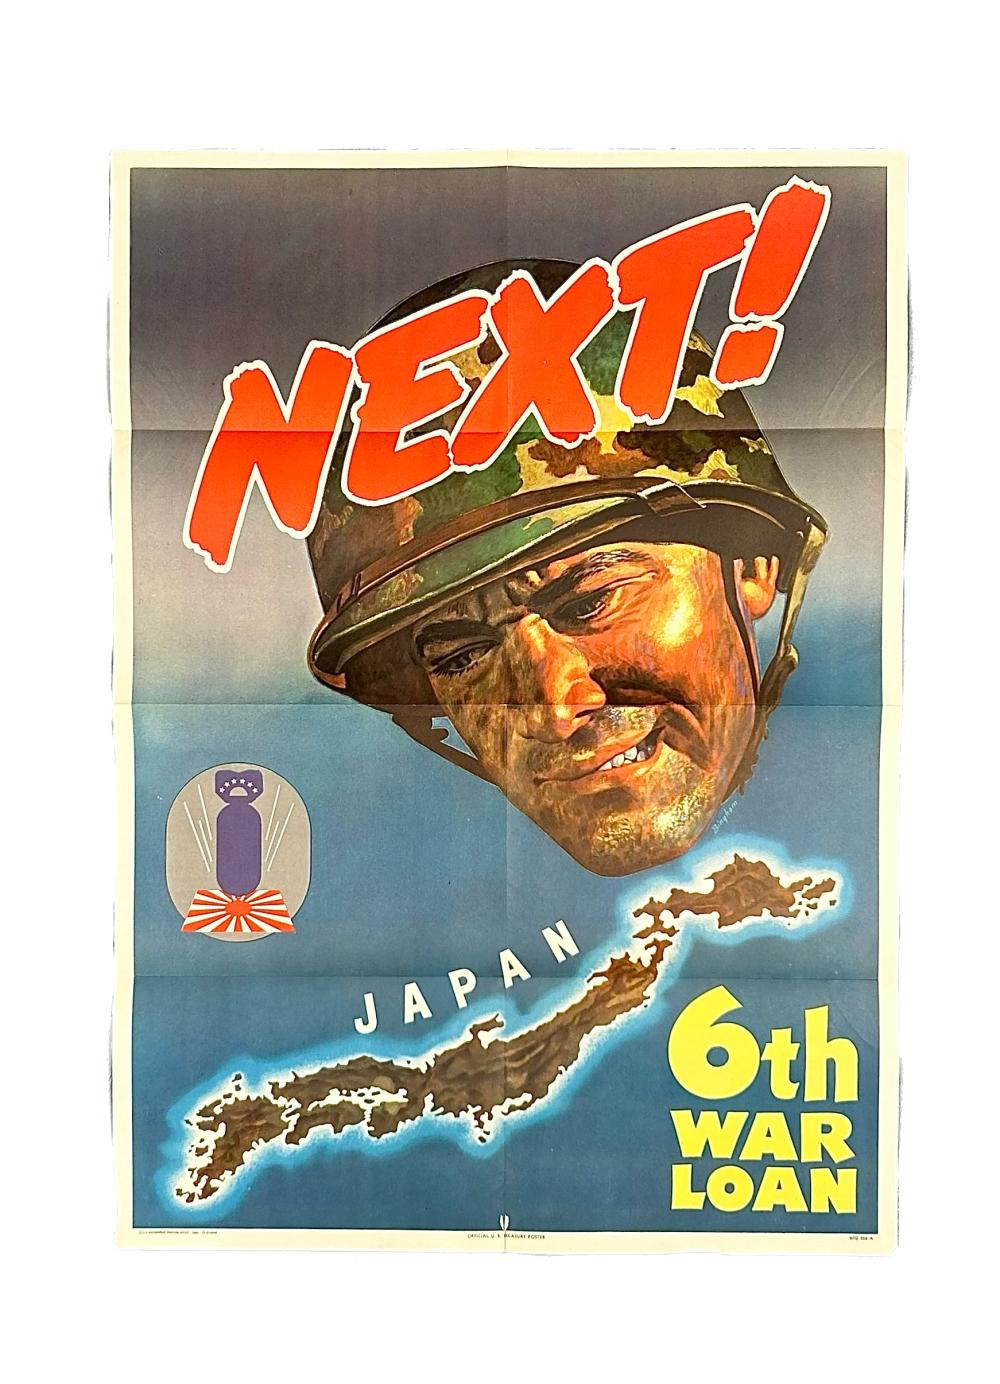 NEXT! JAPAN WORLD WAR II-ERA WAR LOAN